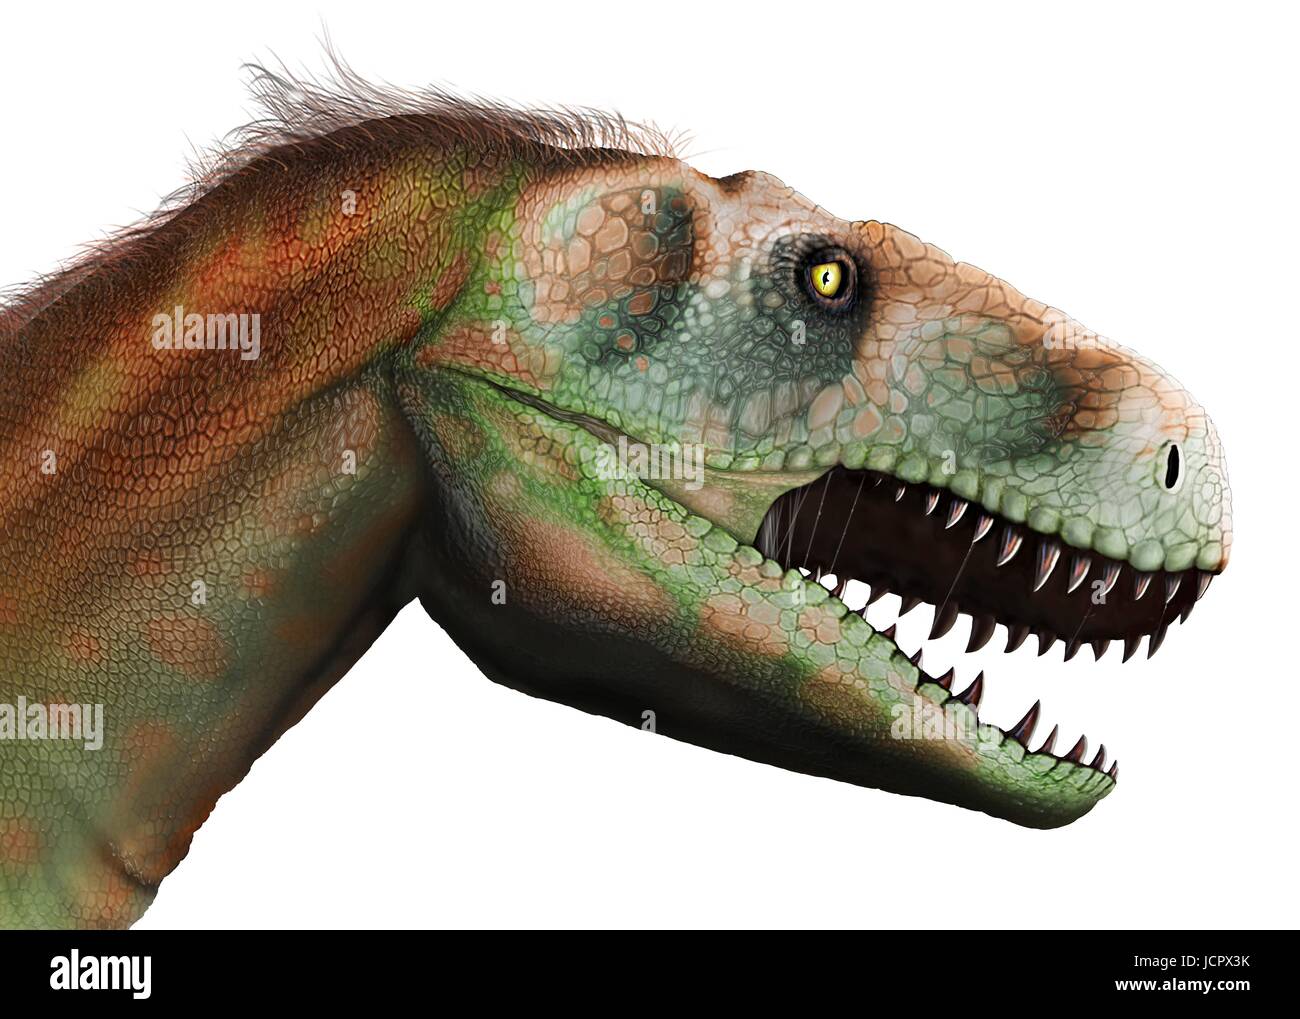 Kopf-Studie Megalosaurus. Megalosaurus ist Gattung ausgestorbener Fleisch fressenden Dinosaurier, Theropoden, vom mittleren Jura-Zeit in Eartha€™ s Geschichte, 166 Millionen Jahren. Es lebte in der nun südlichen England.die ersten Dinosaurier Fossil jemals gefunden, längst 1676, wahrscheinlich Fragment Oberschenkelknochen war, die Megalosaurus.This gehörte, Tier war mittlere Theropode, 6 bis 7 m lang mit einem Gewicht von etwa einer Tonne. Modernes Verständnis ist, dass Megalosaurus in Daunenfedern, besonders entlang dem hinteren Bauch behandelt werden kann. Stockfoto